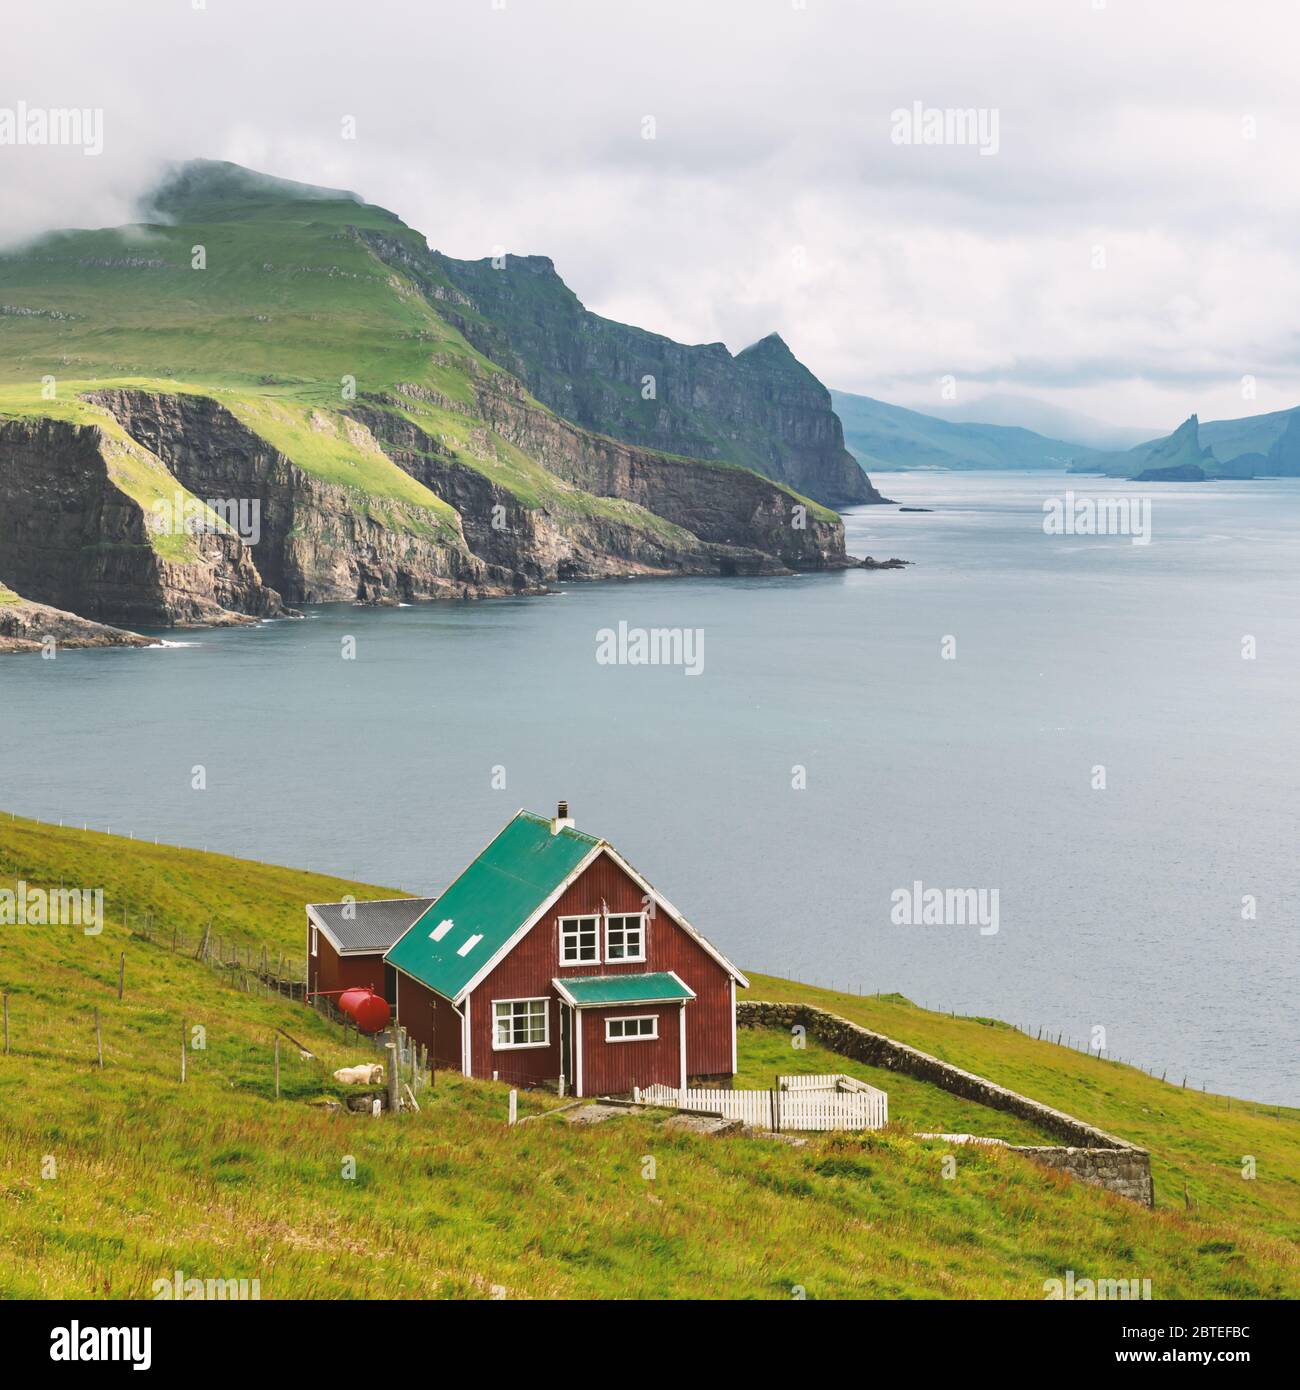 Casa di guardiano del faro sull'isola di Mykines, isole Faroe, Danimarca. Fotografia di paesaggio Foto Stock